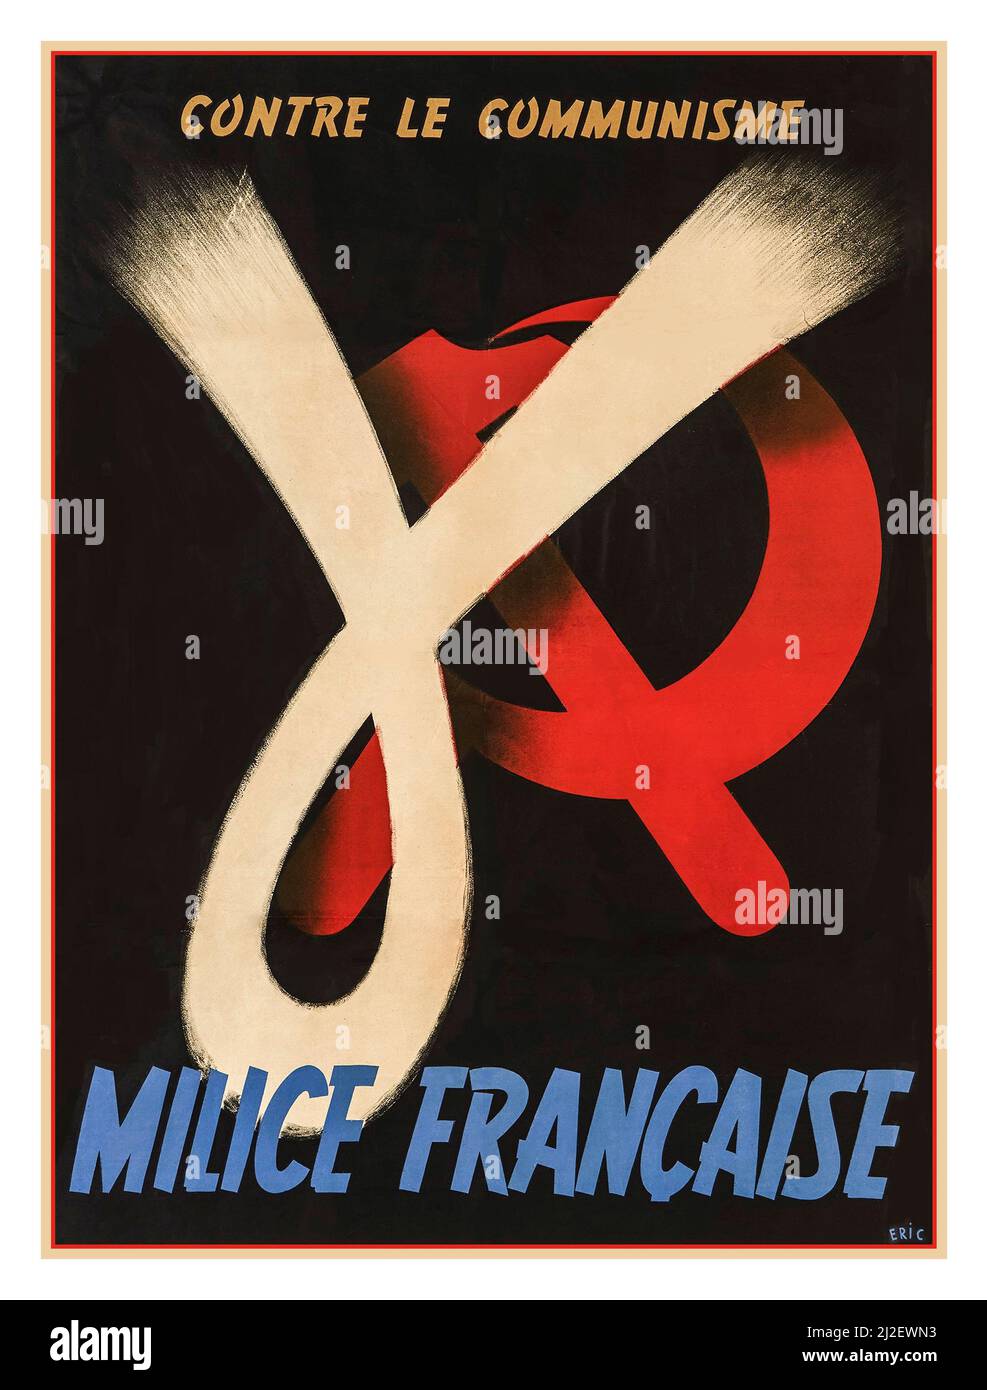 VICHY FRANCE WW2 Poster de propagande 'contre le communisme'… "La milice française" soutenue par le maréchal Petain, une affiche de propagande antisémite, xénophobe, autoritaire pour le recrutement des conciliateurs nazis le faciste français Milice, 1943 ans, a signé Eric WW2 la Seconde Guerre mondiale Banque D'Images